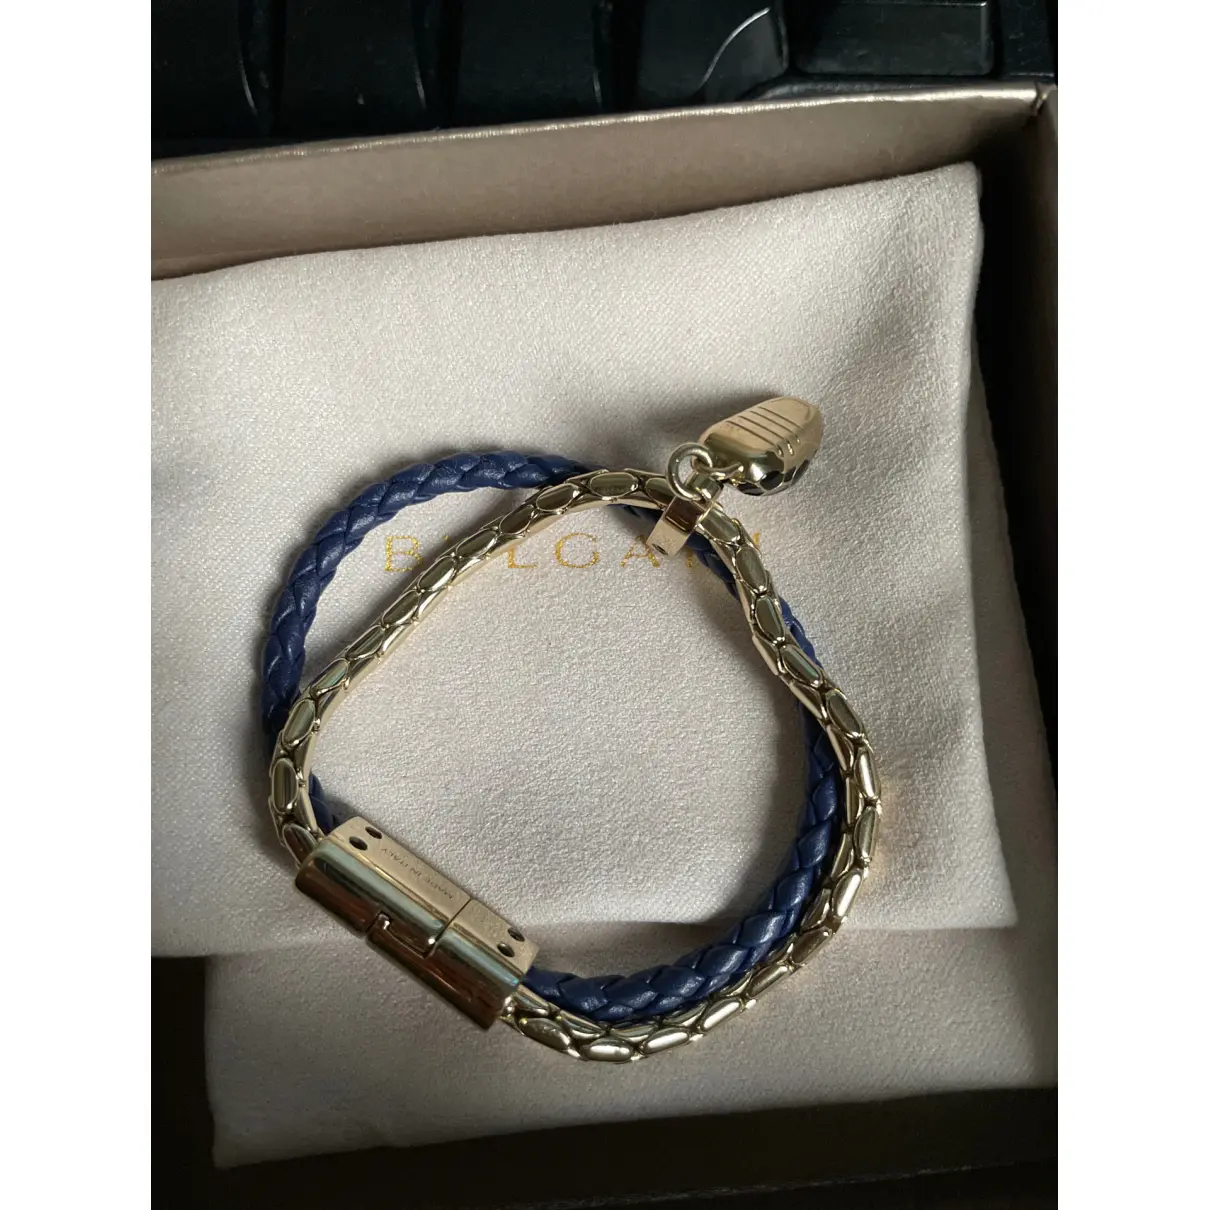 Buy Bvlgari Serpenti bracelet online